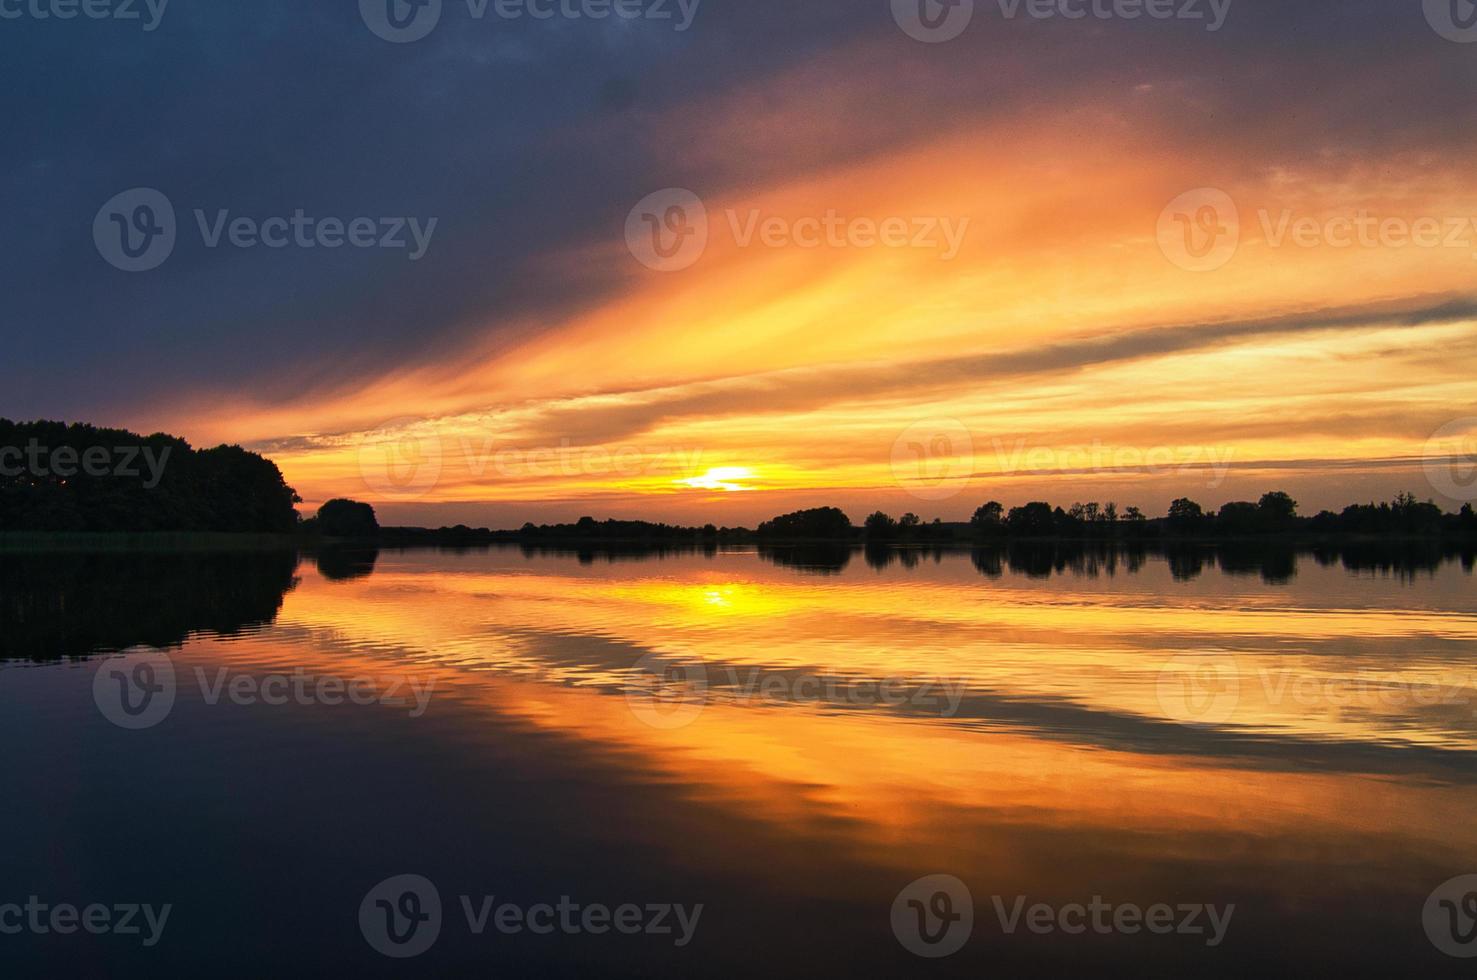 weerspiegeling van de lucht in het water. goud, geel en roze kleuren van de lucht worden weerspiegeld in het meer. foto